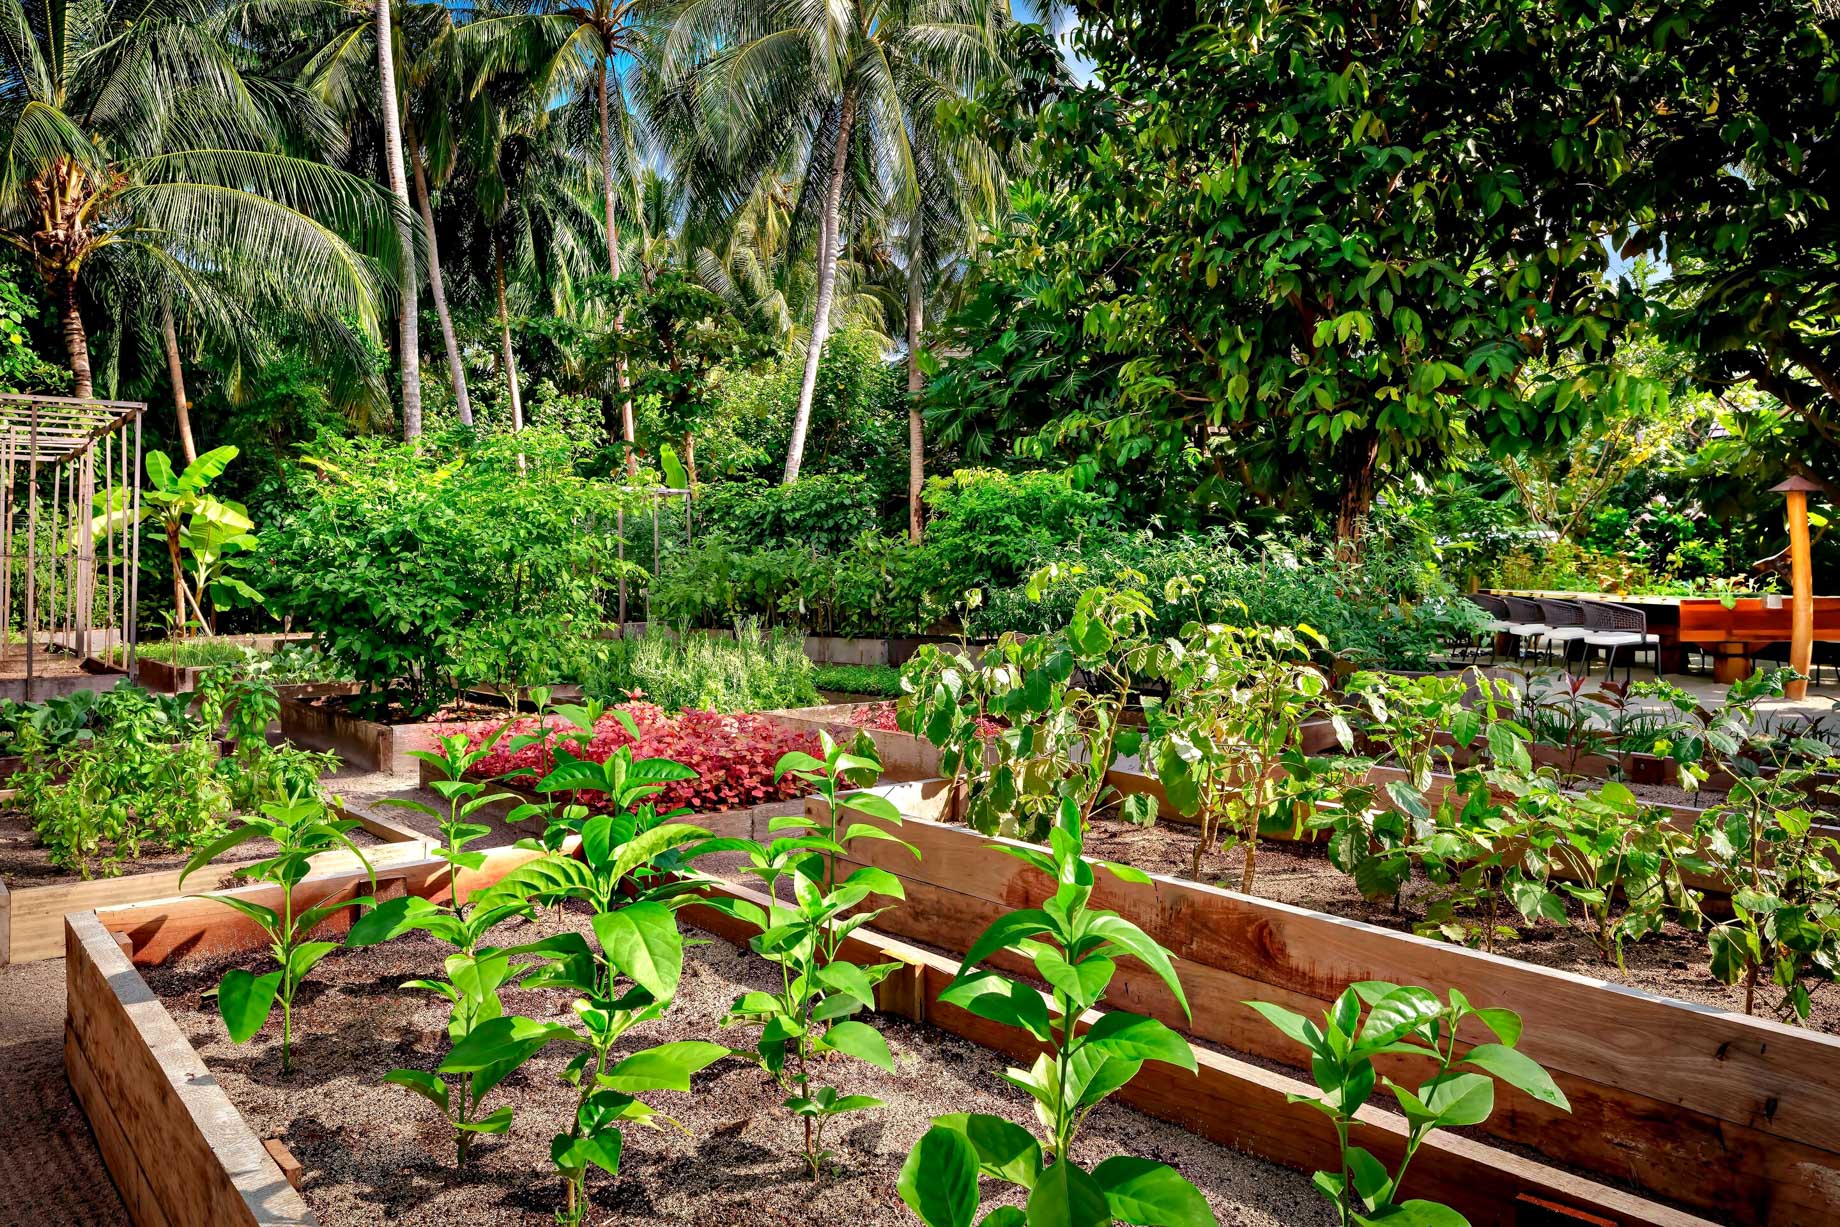 The St. Regis Maldives Vommuli Resort - Dhaalu Atoll, Maldives - Herb Vegetable Garden